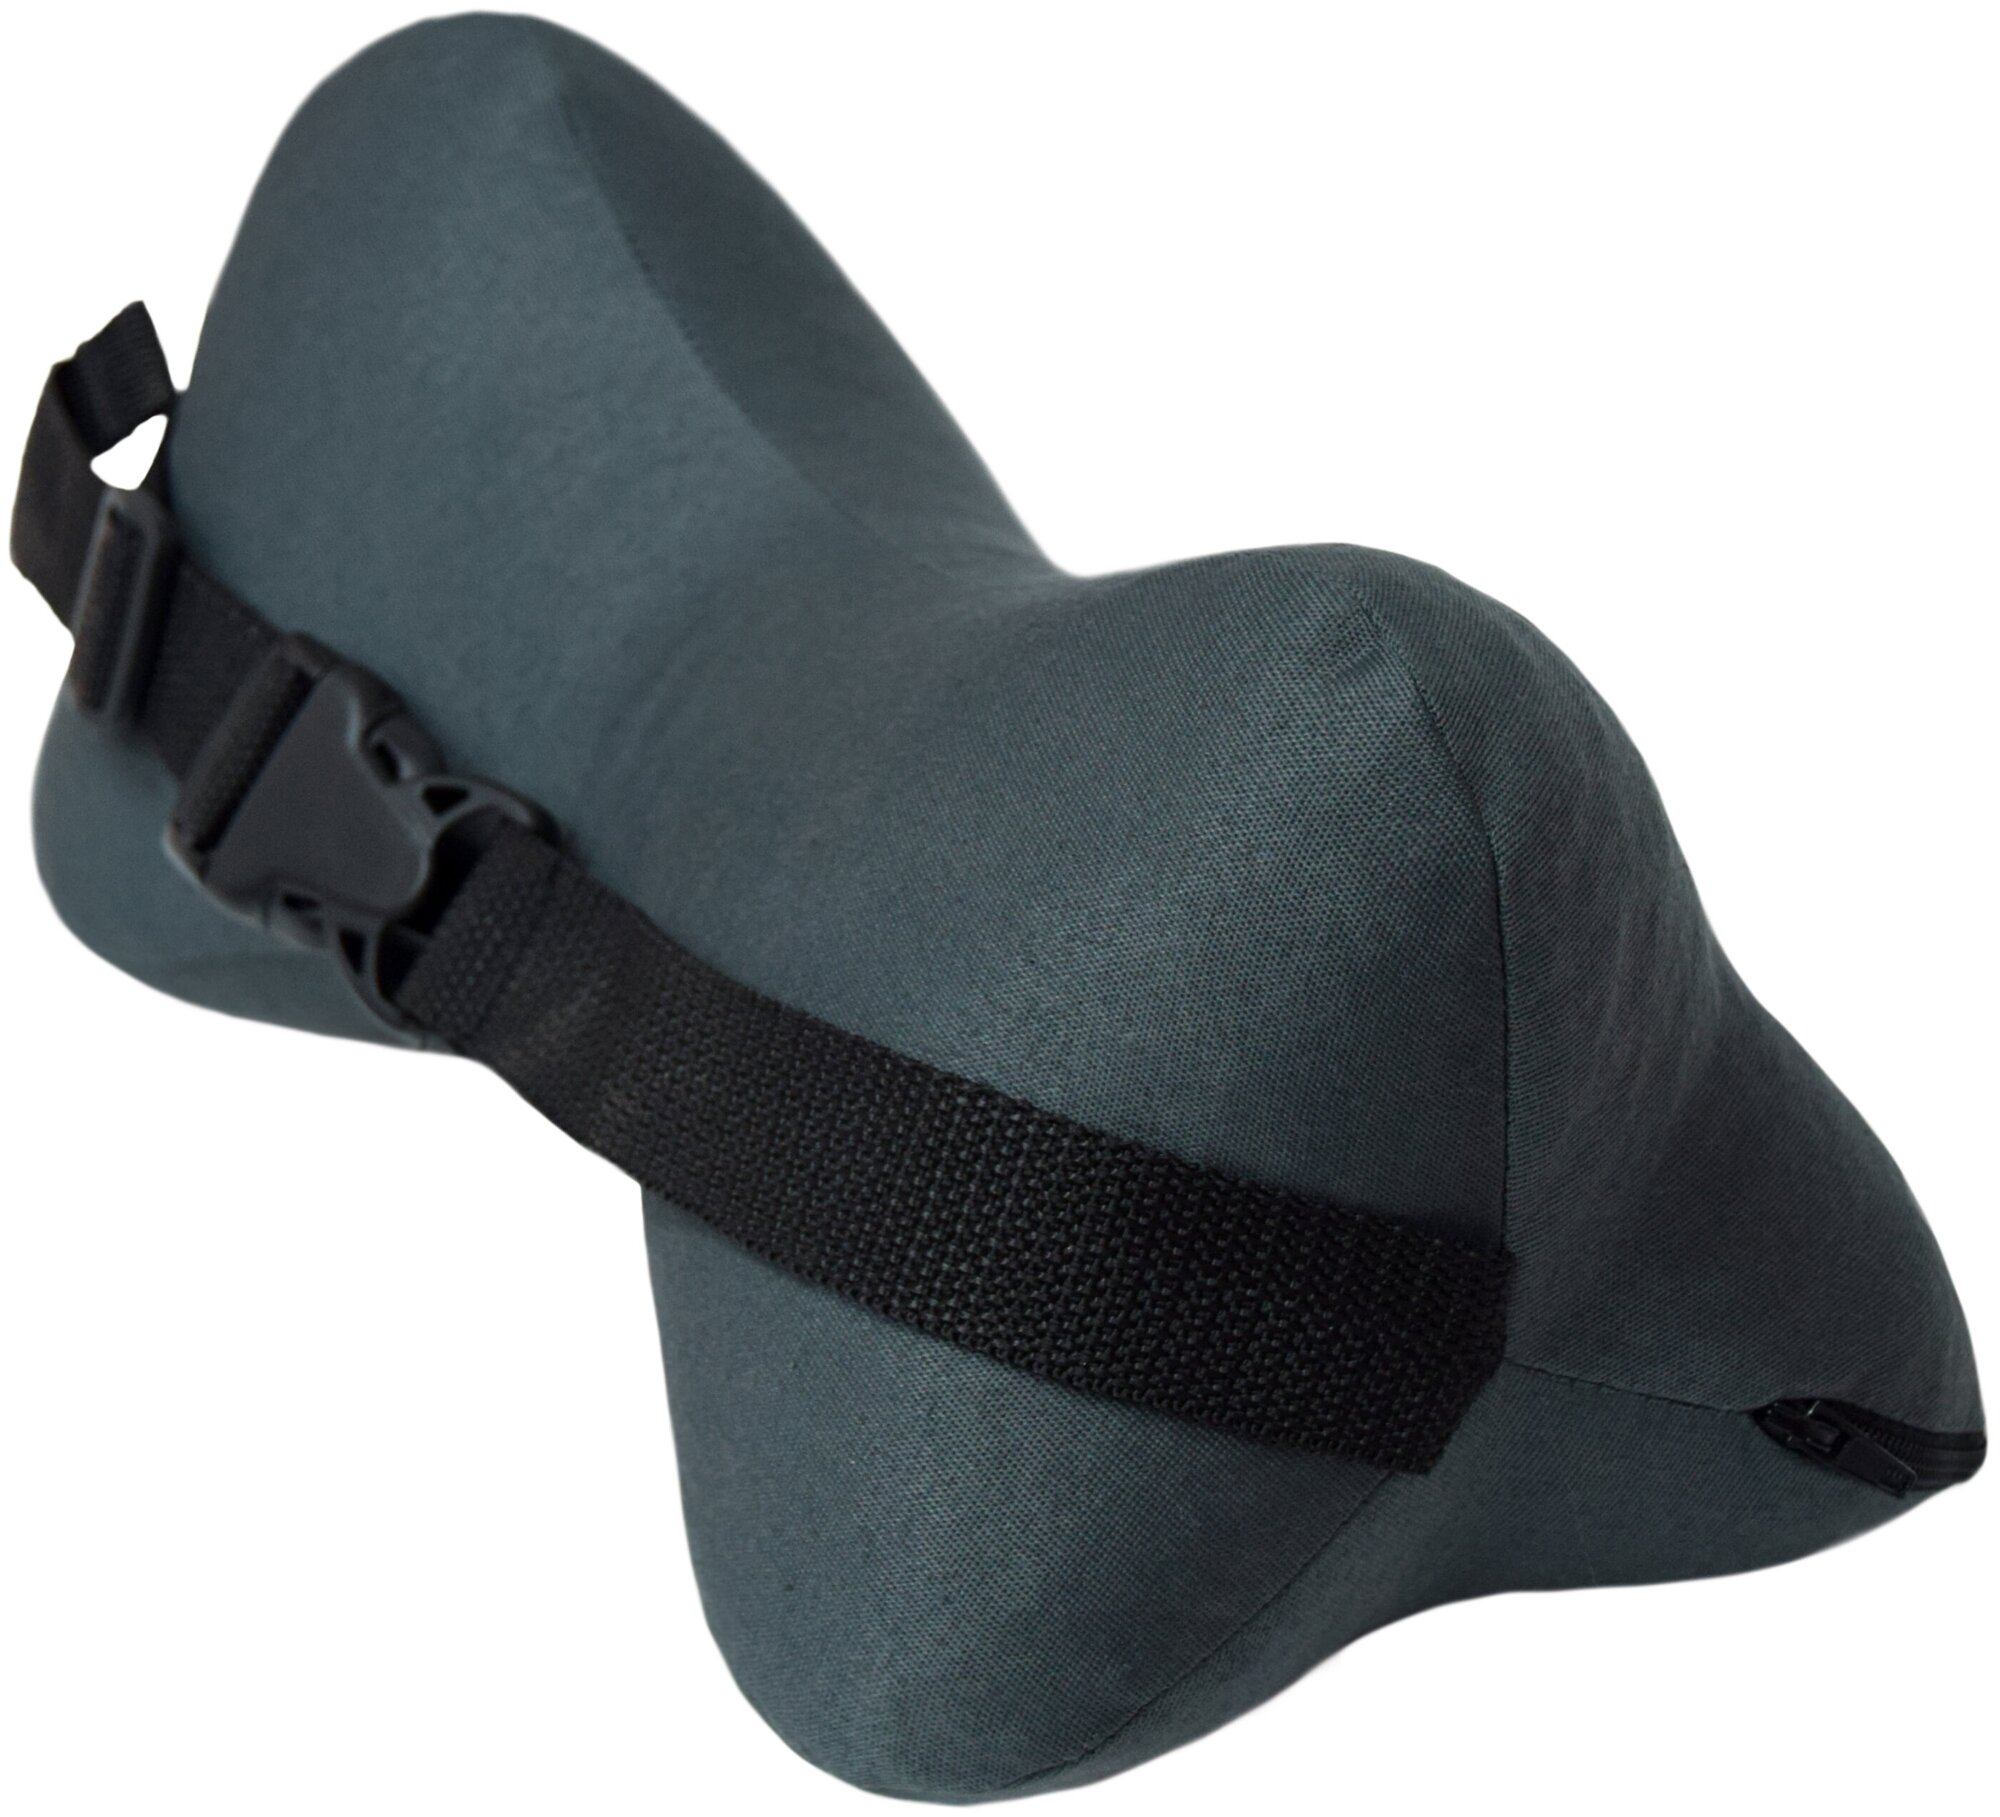 Ортопедическая подушка косточка под голову и шею на водительское кресло Smart Textile "автомобильная" с лузгой гречихи Цвет Серый